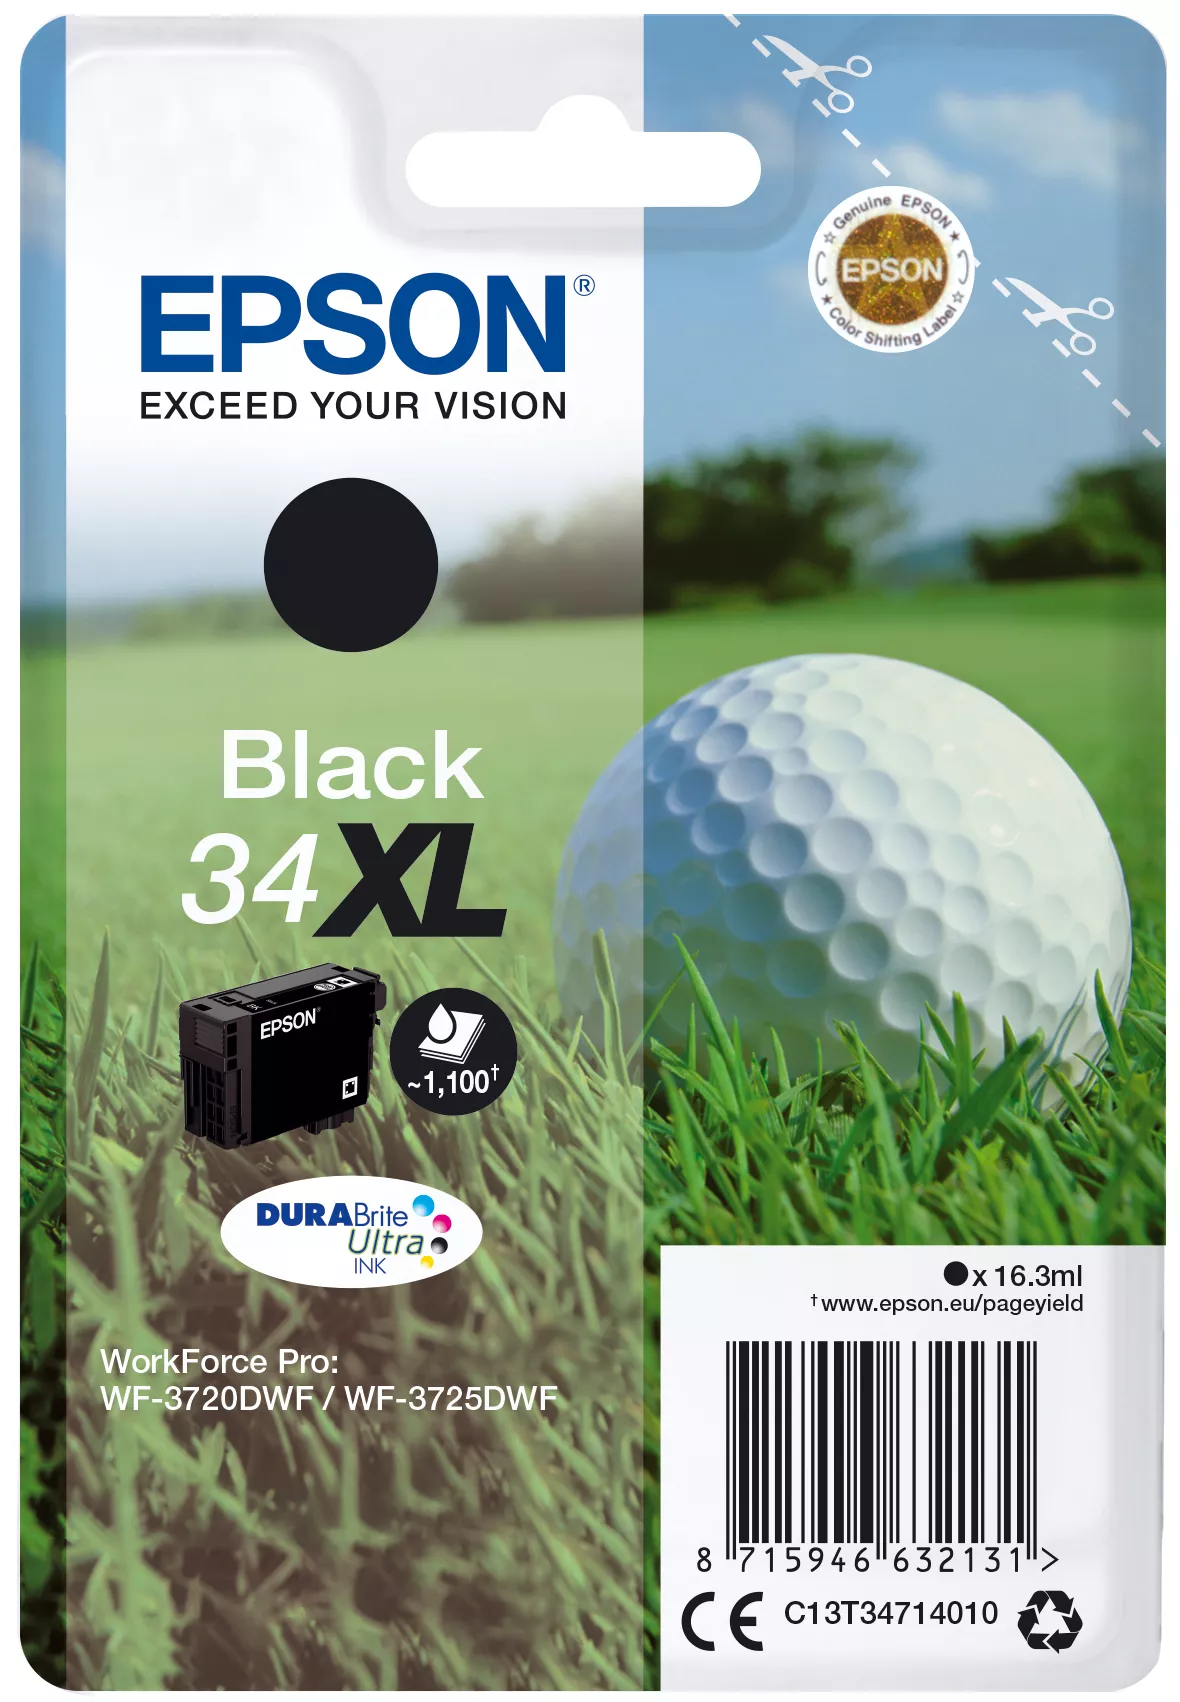 Achat EPSON Singlepack 34XL Encre Noir DURABrite Ultra 16,3ml - 8715946632148